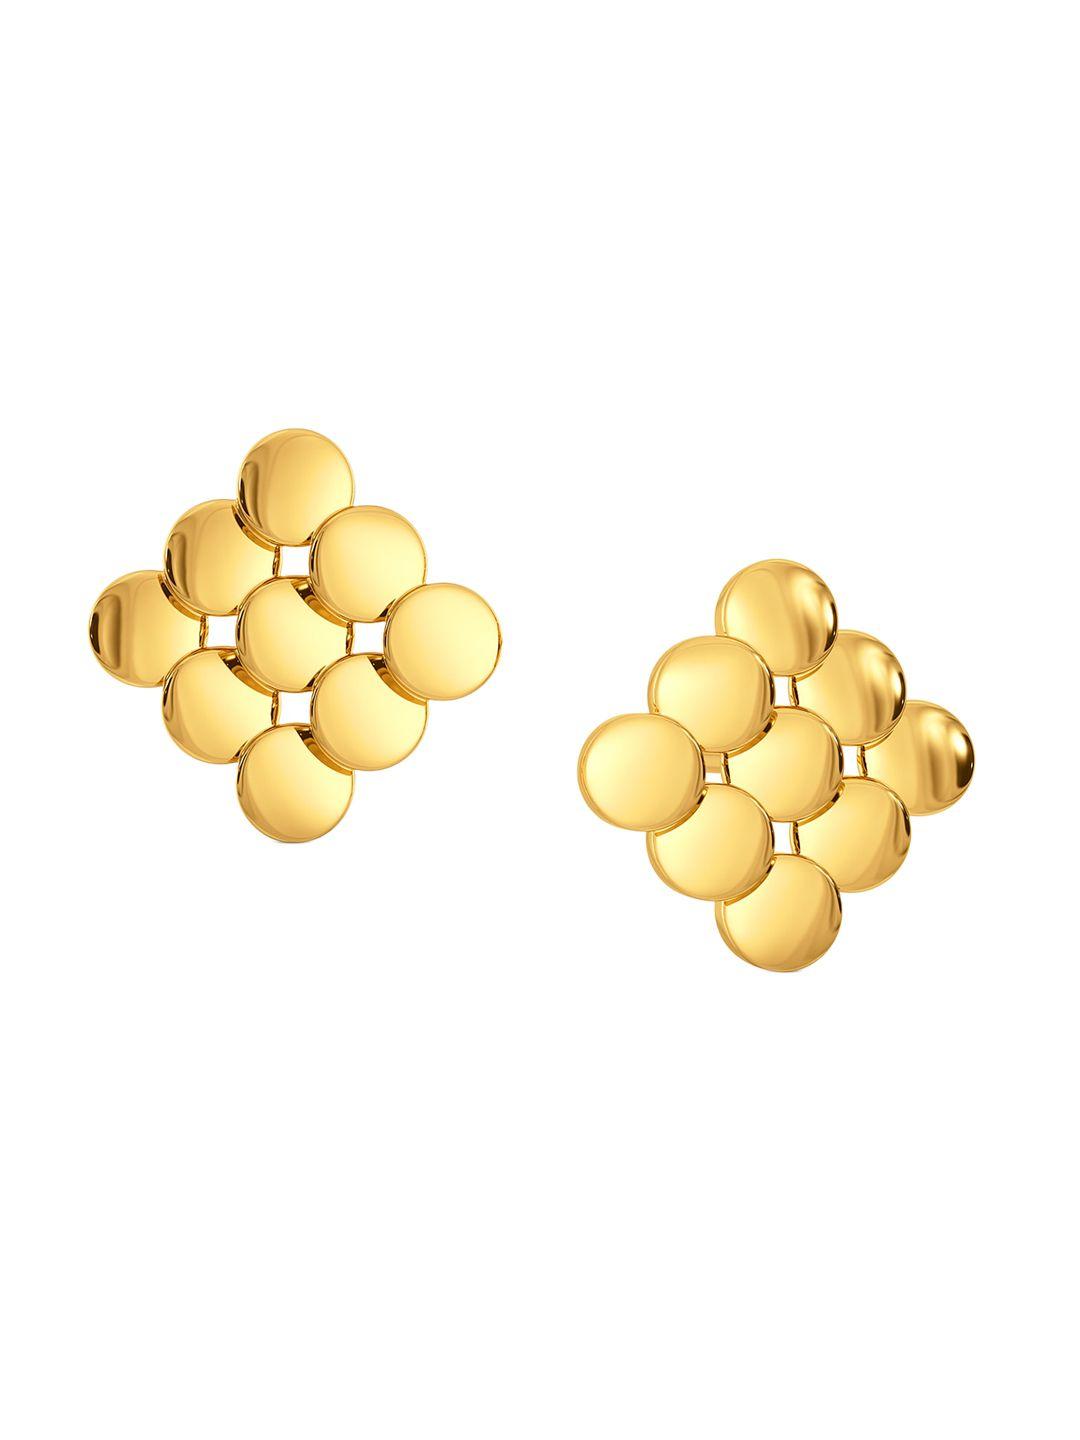 melorra manhattan glitz 18kt gold stud earrings- 3.54gm